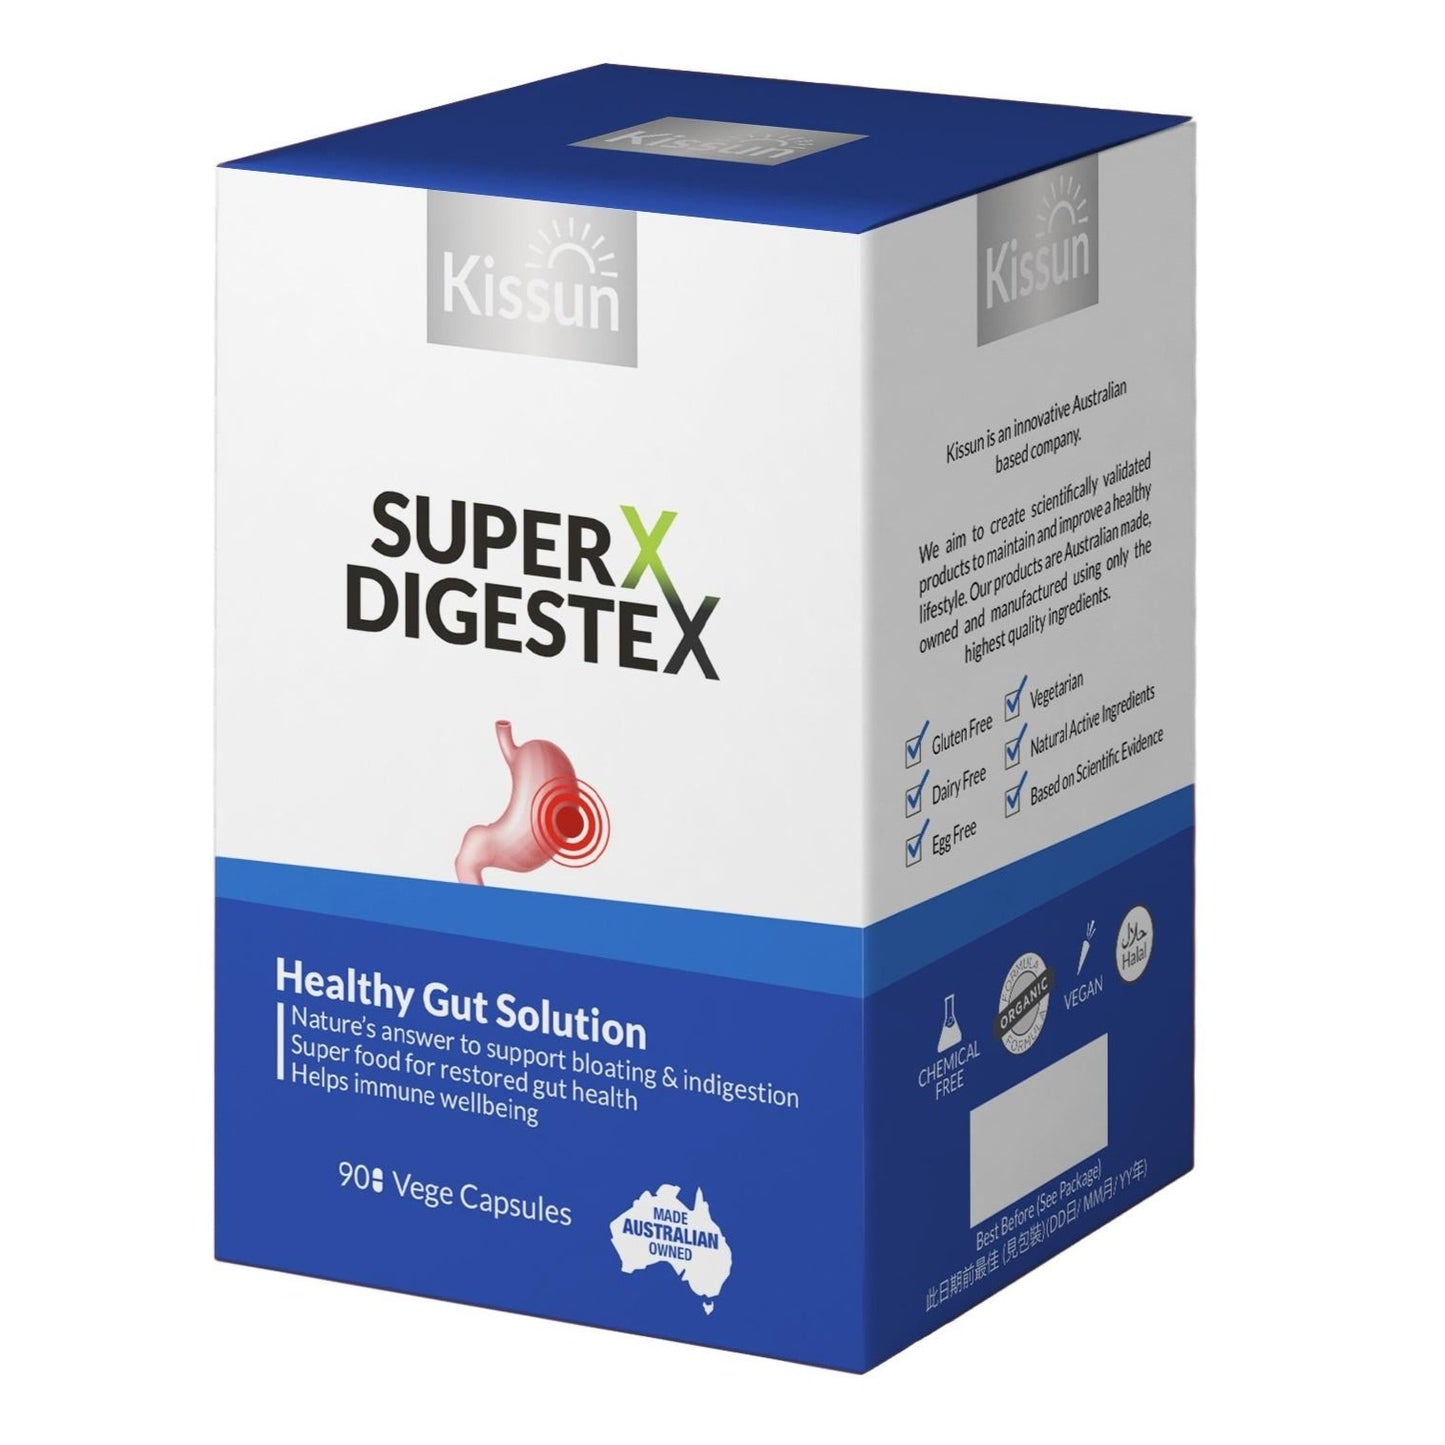 Kissun Super X Digestex